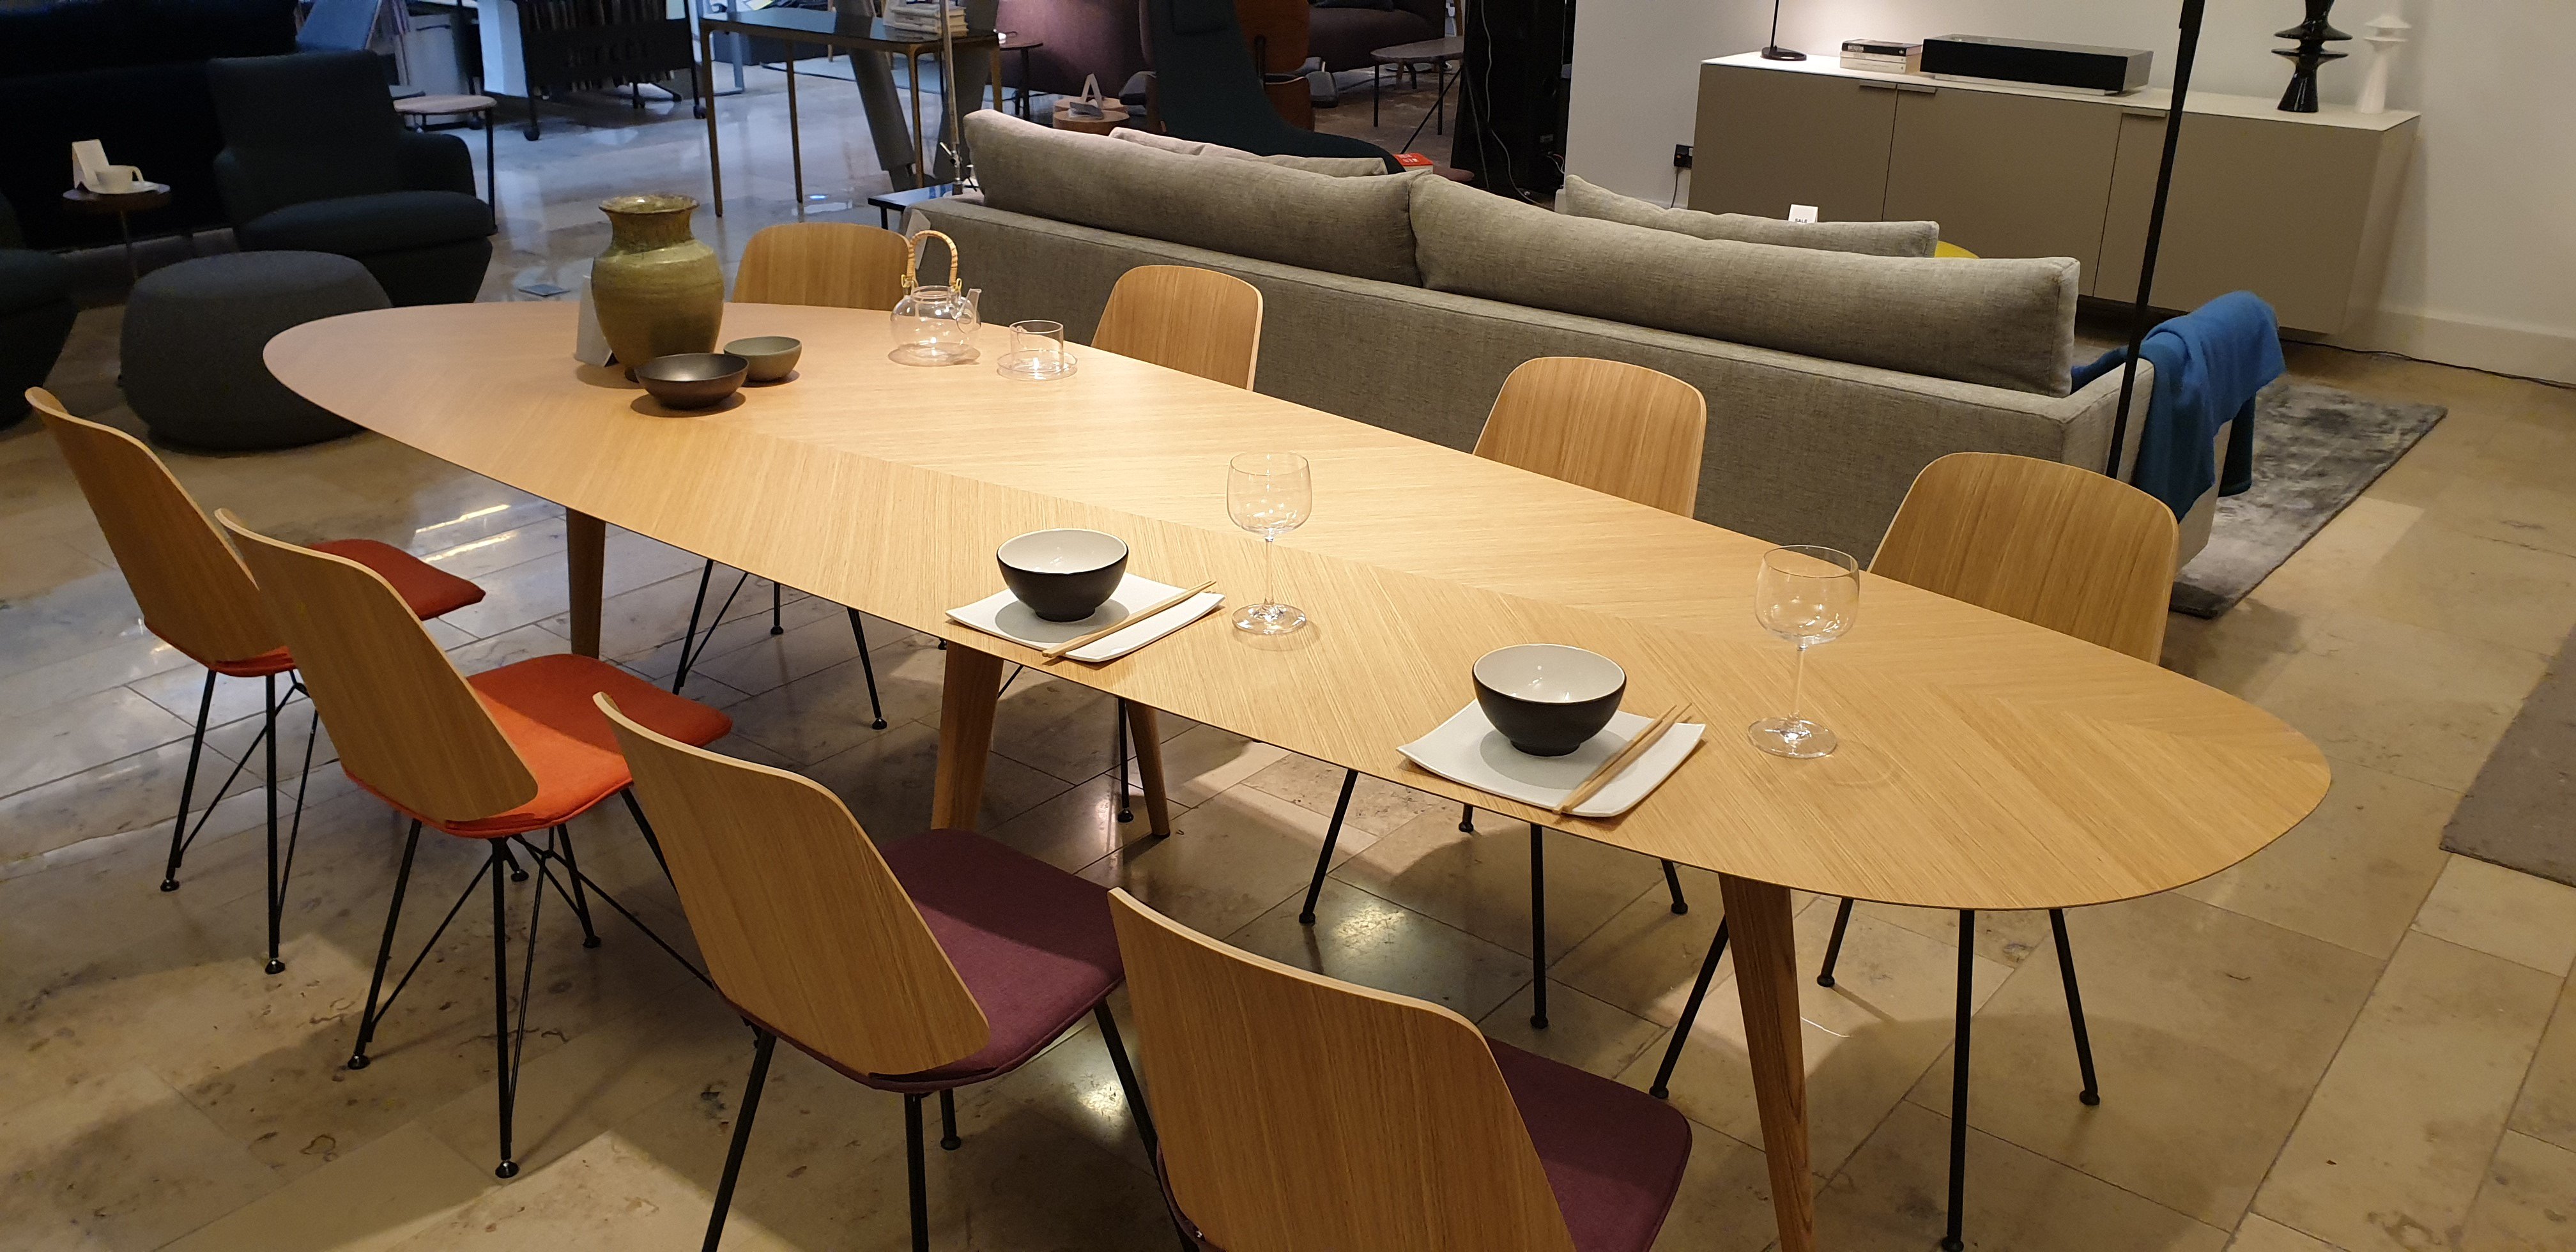 Verslaafde Installeren Aanpassing Living Space Belfast on Twitter: "Our new Zanotta Tweed Table &amp; June  Chairs 😃 #furniture #furnituredesign @ZanottaSpa https://t.co/7J0xqomoCv"  / Twitter